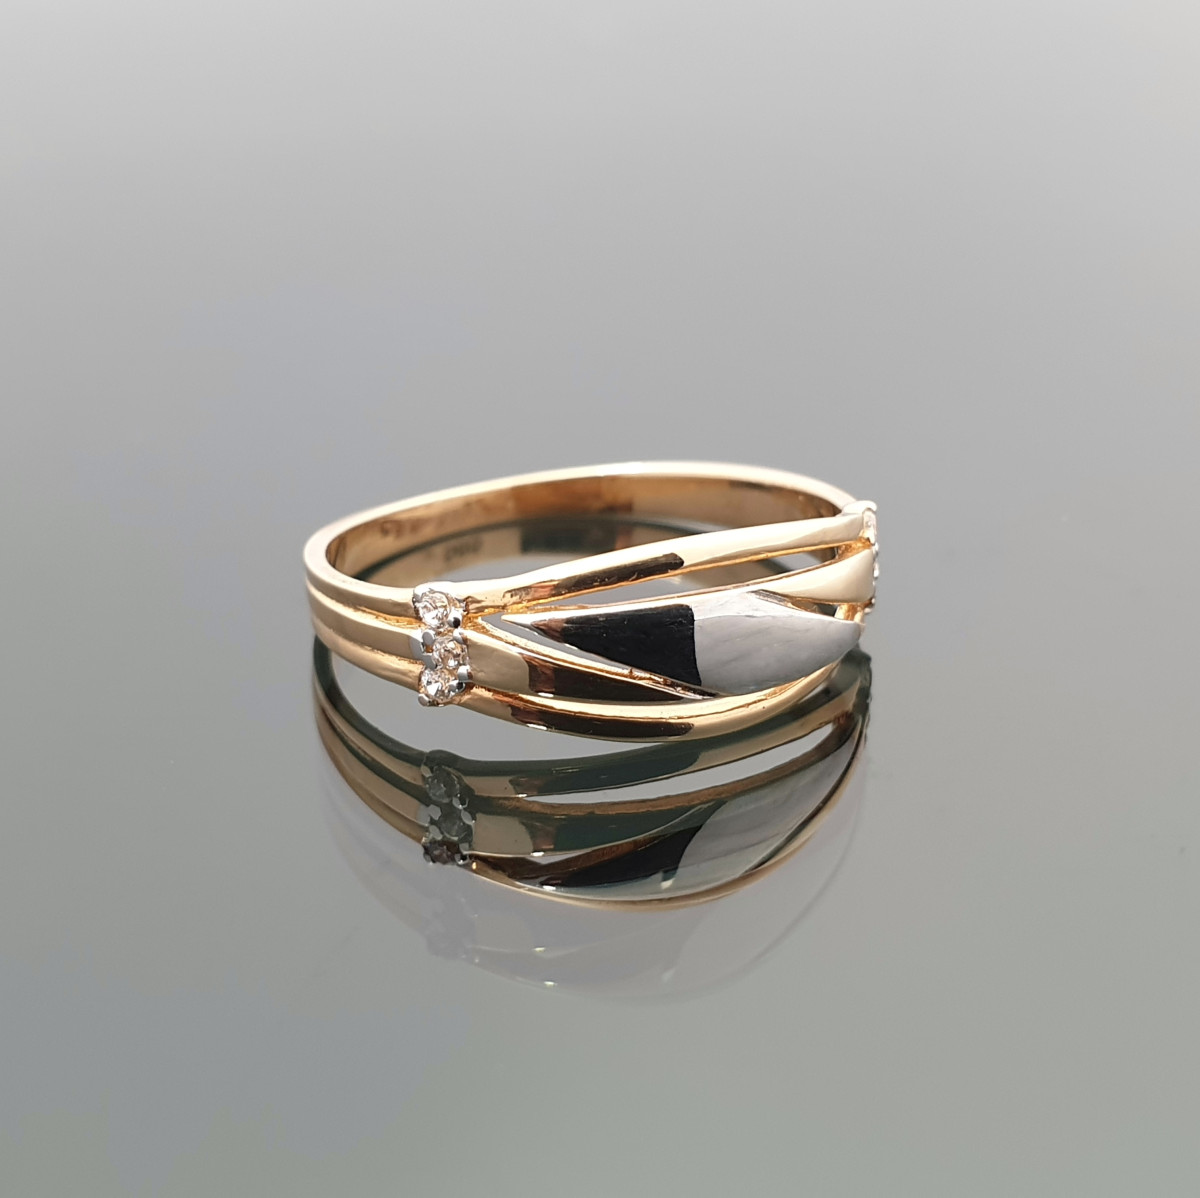 Auksinis žiedas dekoruotas balto aukso detalėmis (181) 1